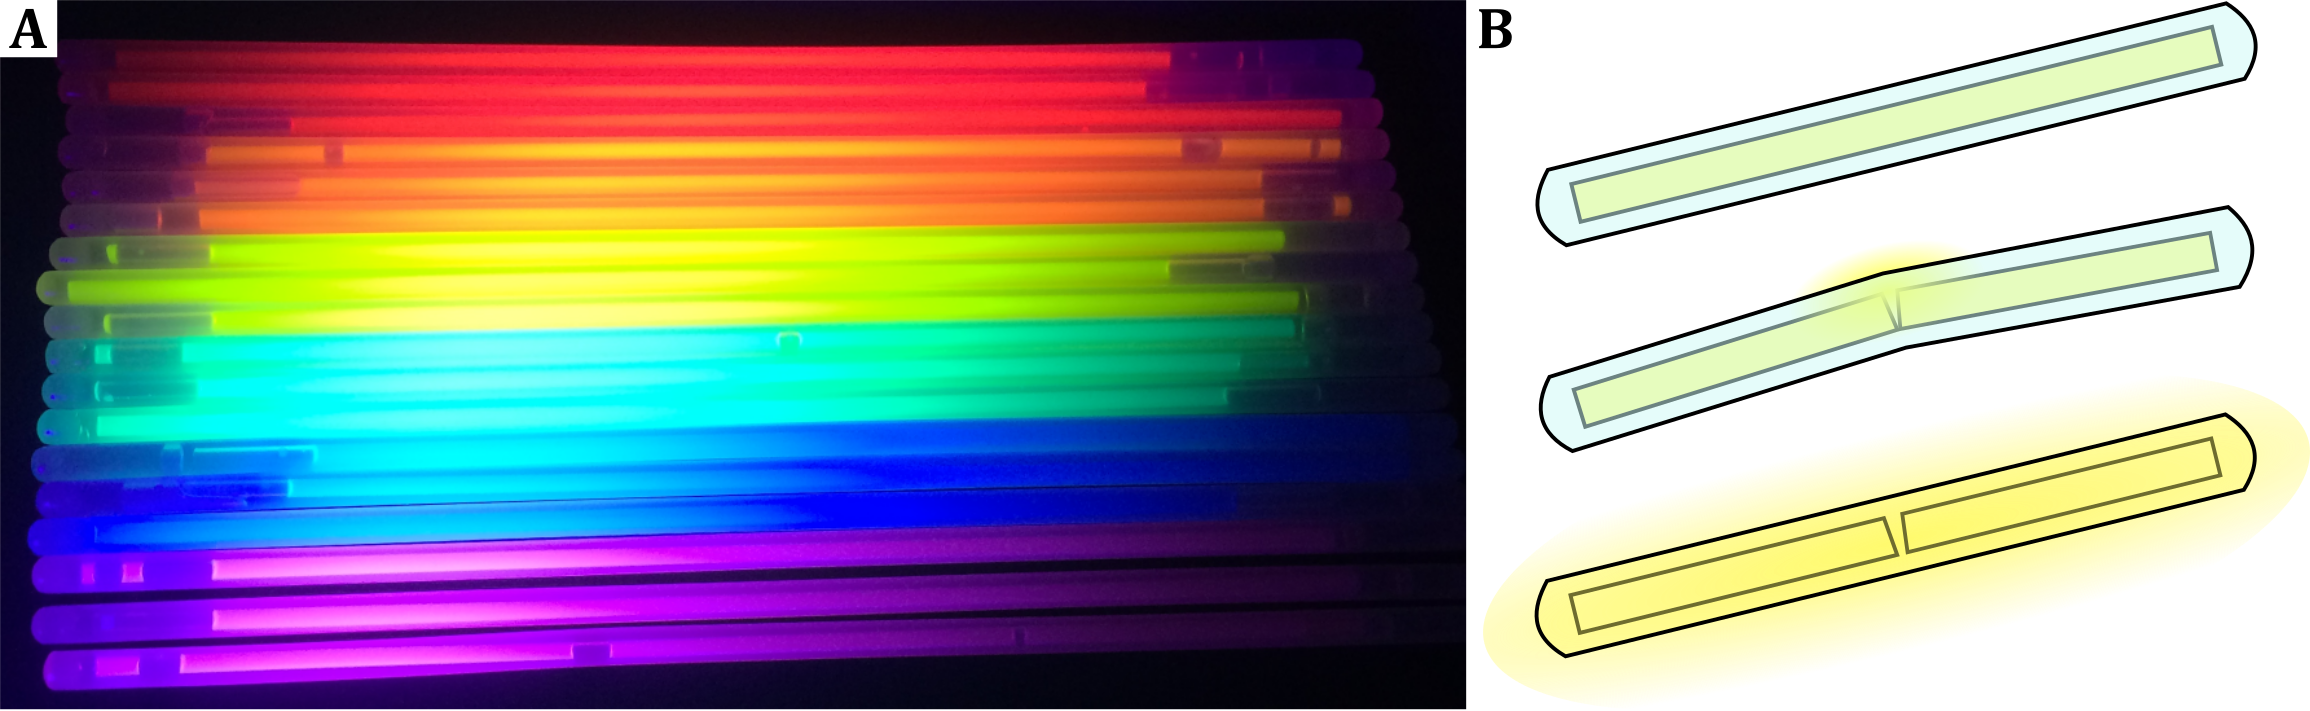 (A) Verschiedenfarbige Knicklichter im ungeknickten Zustand unter UV-Licht. (B) Schematische Darstellung der Funktion von Knicklichtern. 